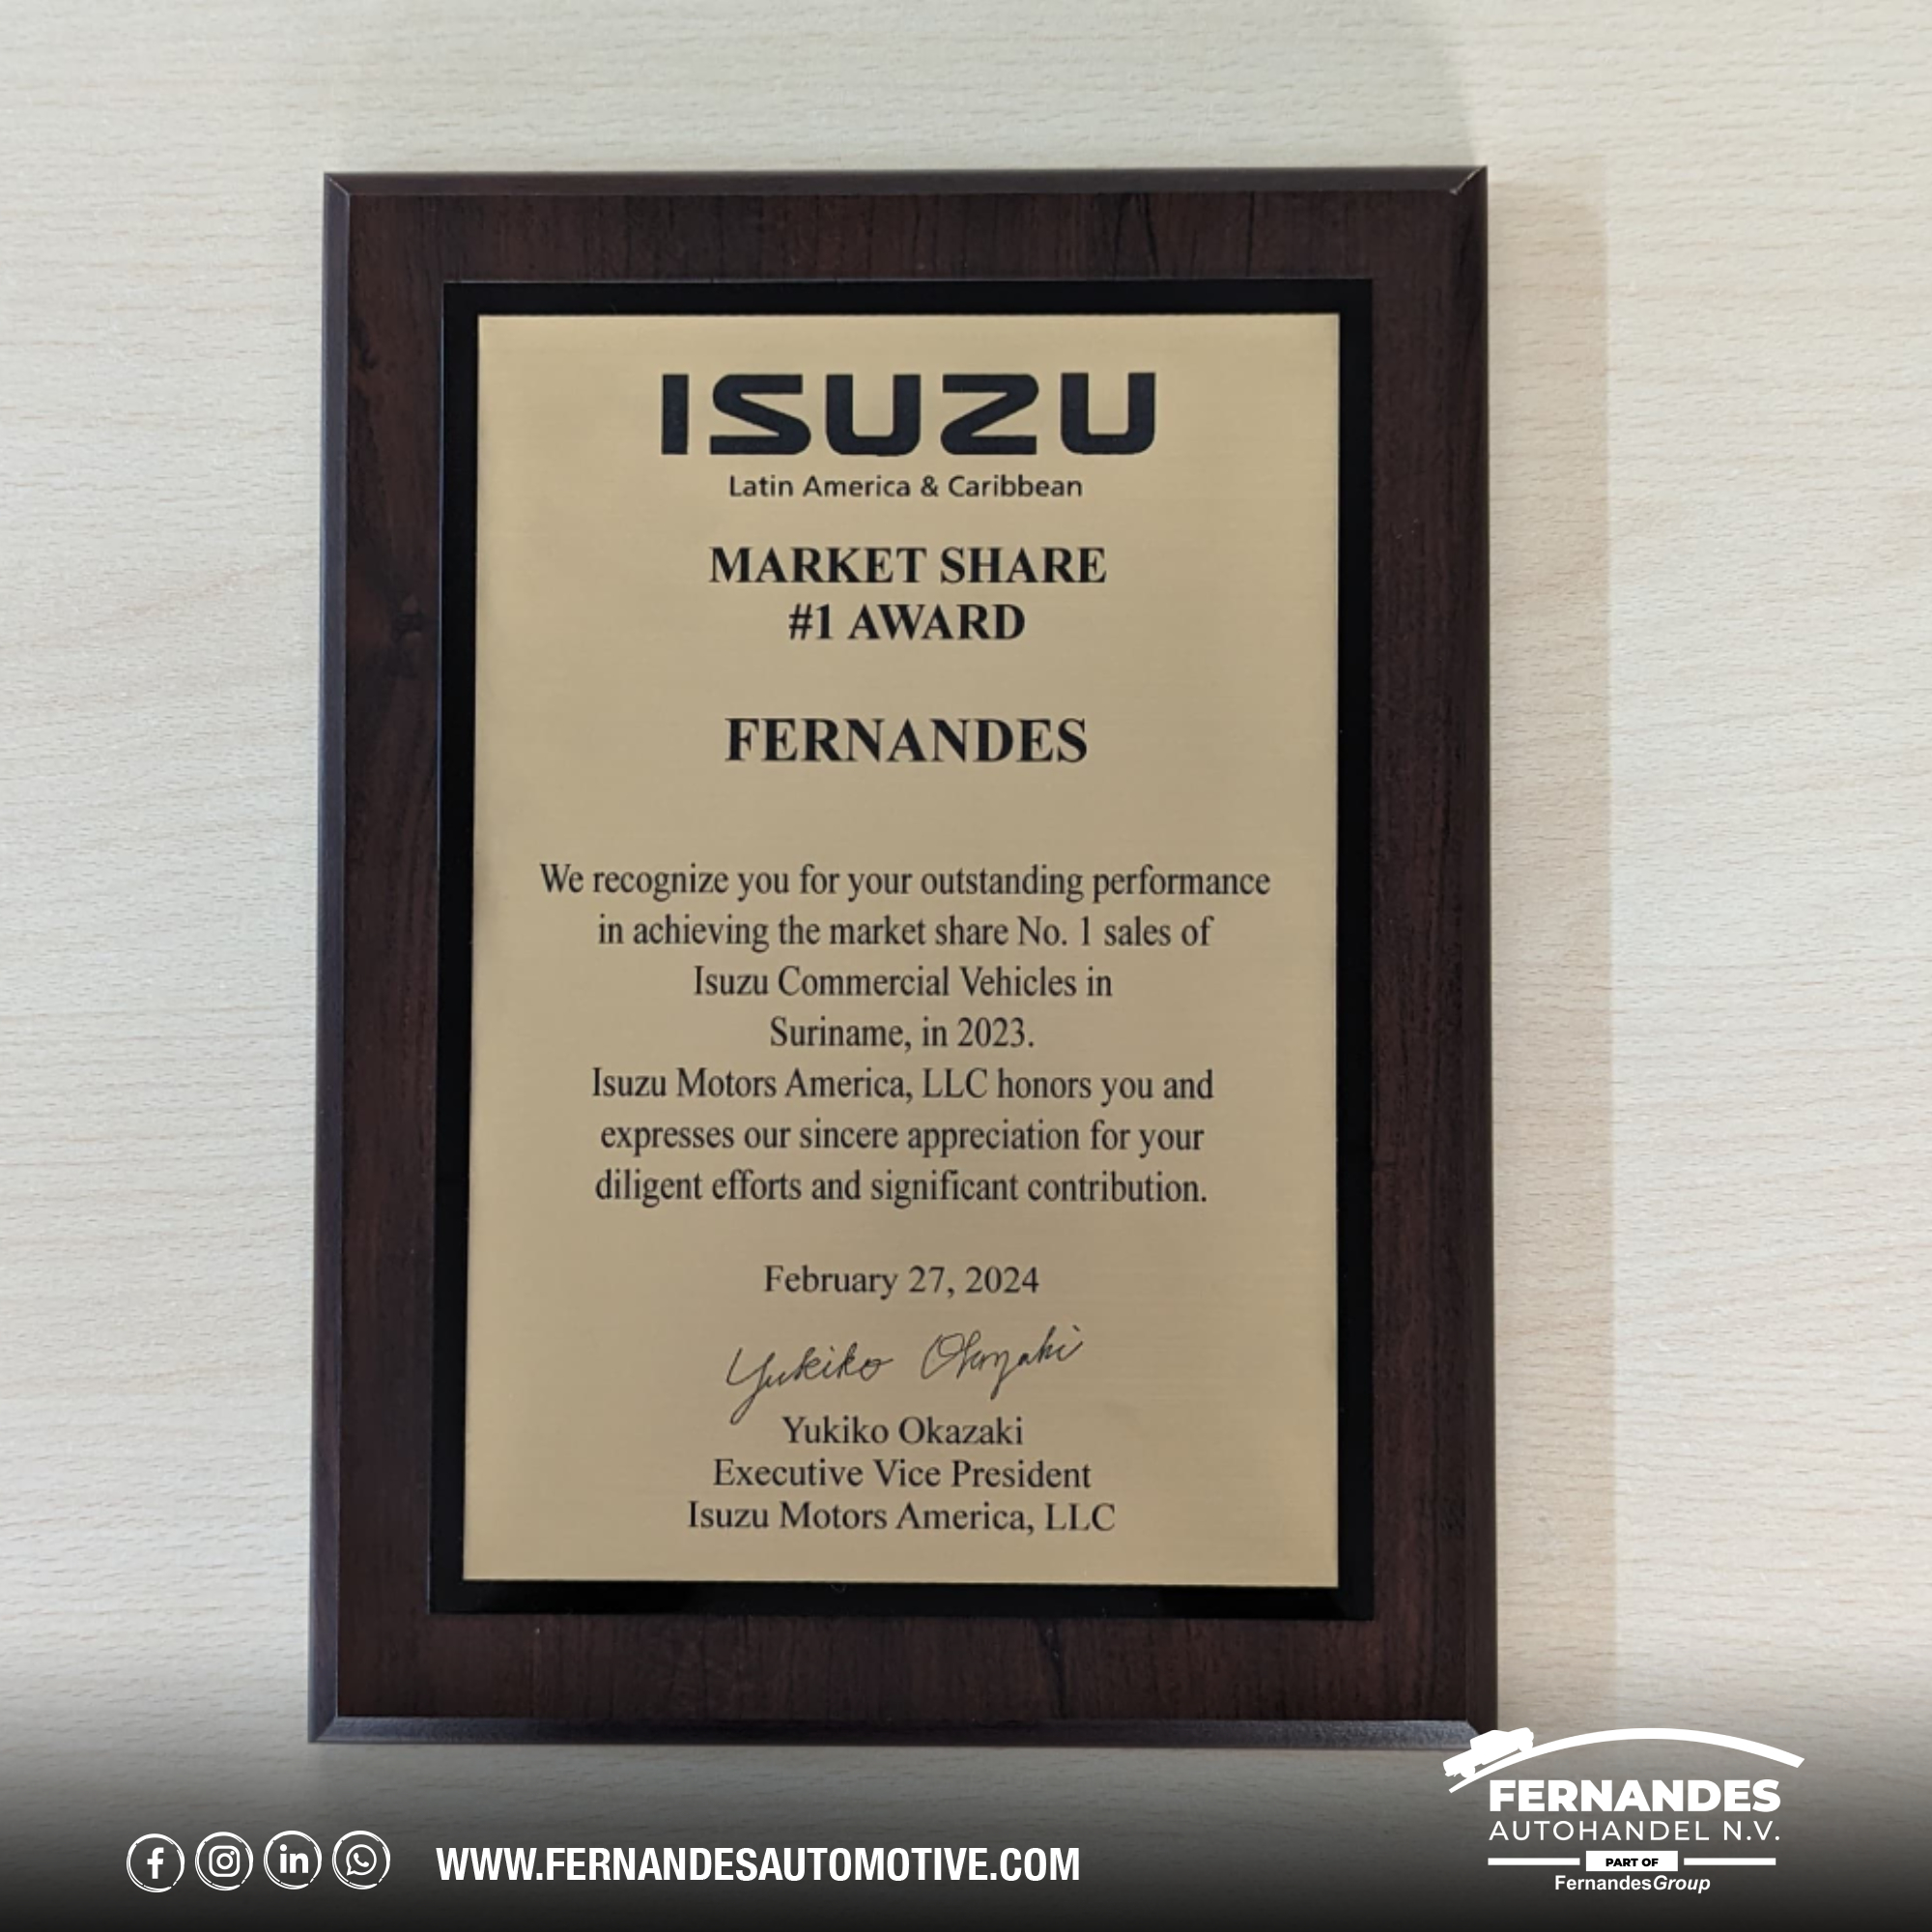 'Isuzu Market Share No. 1 Award voor de verkoop van Isuzu Commercial Vehicles in 2023'